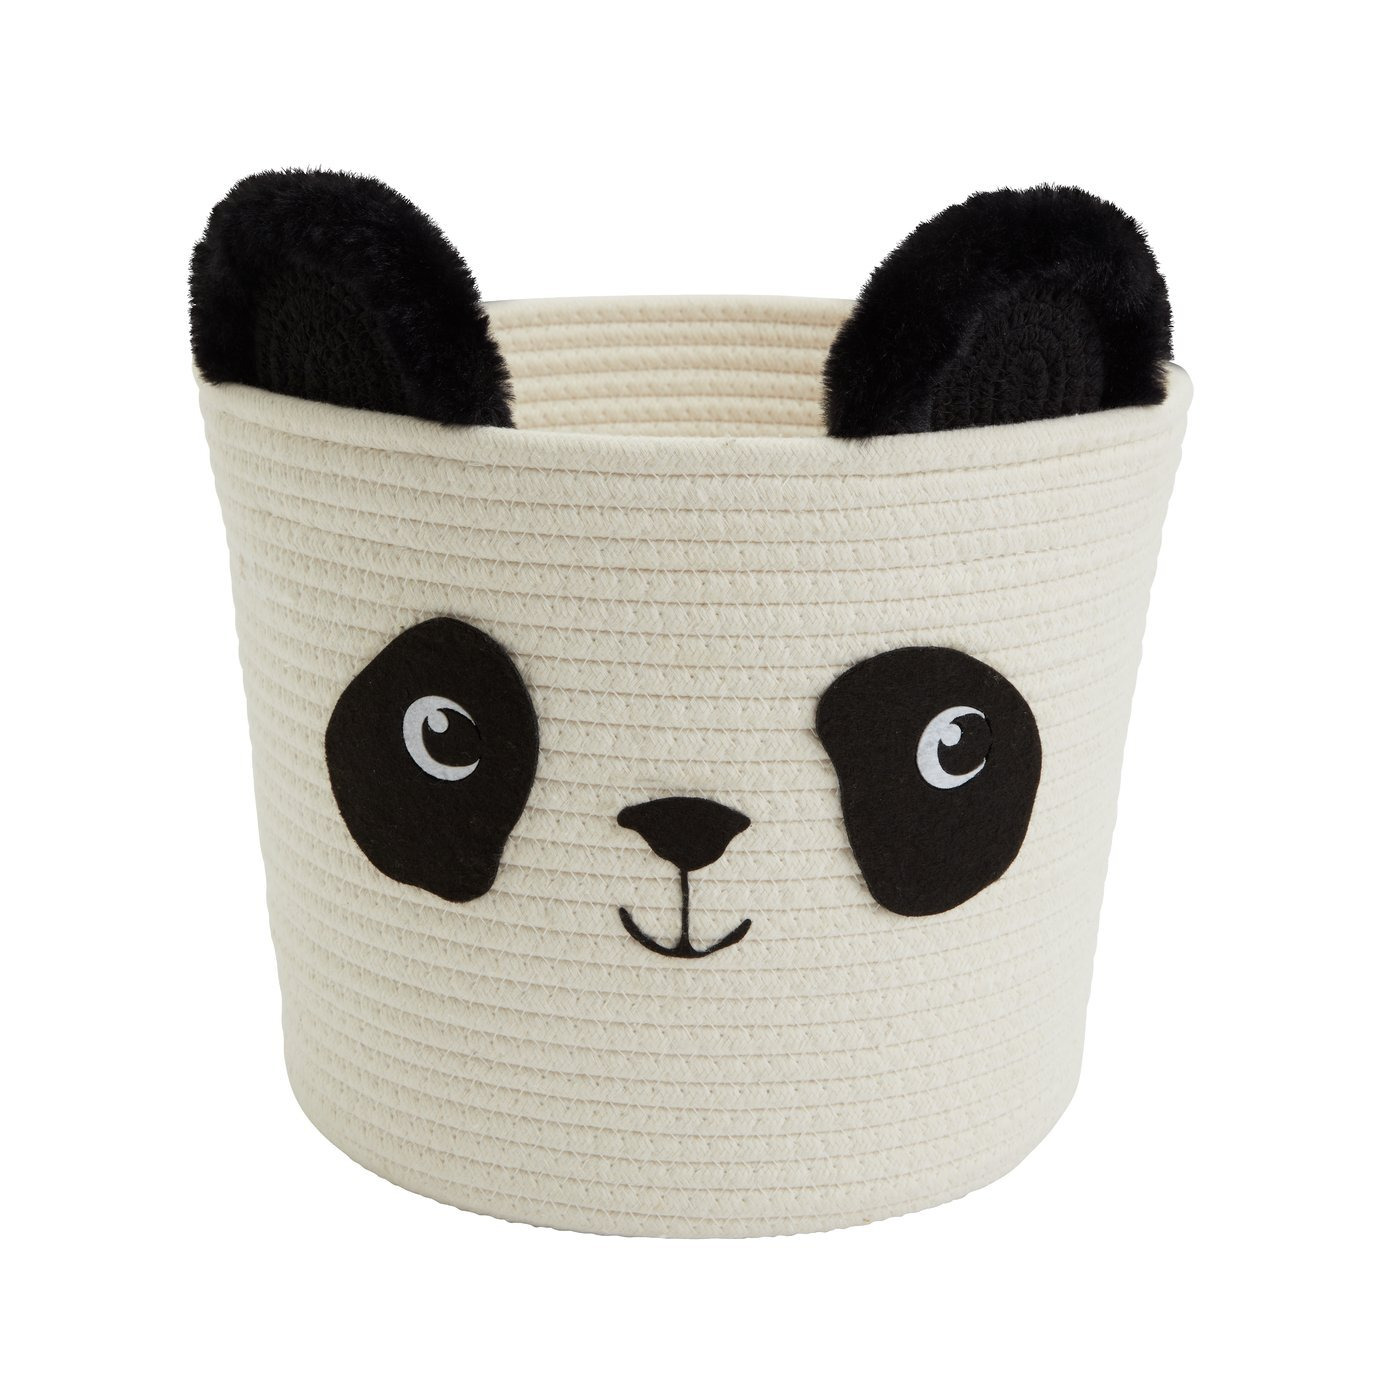 Argos Home Panda Kids Rope Storage Basket - Cream & Black - image 1